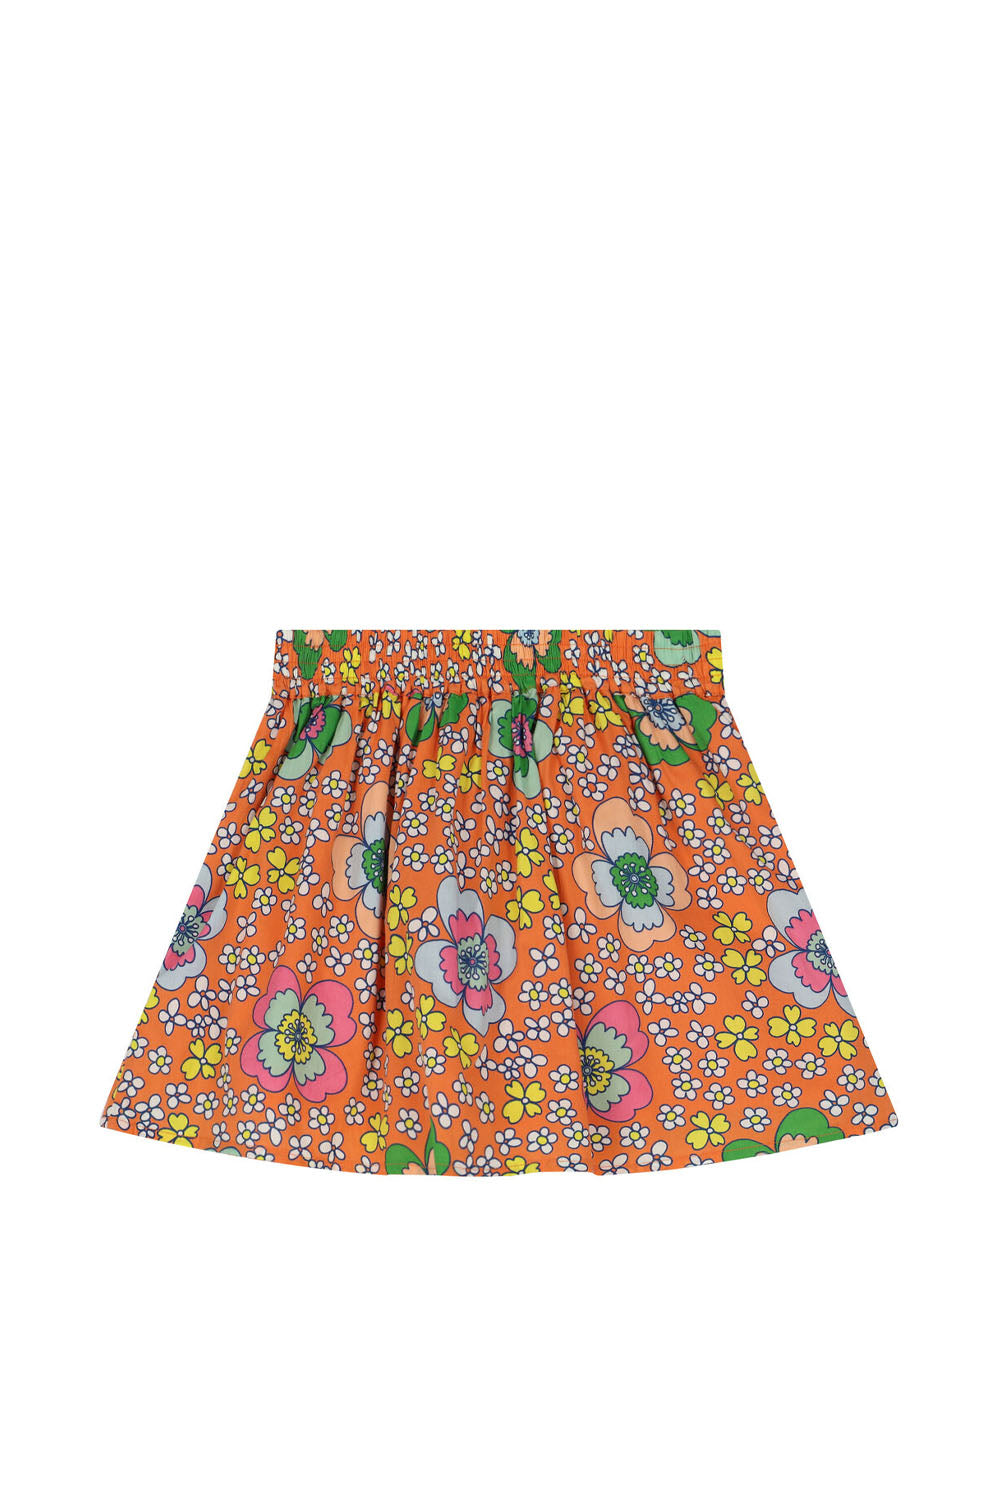 Multi Print Skirt for Girls - Maison7